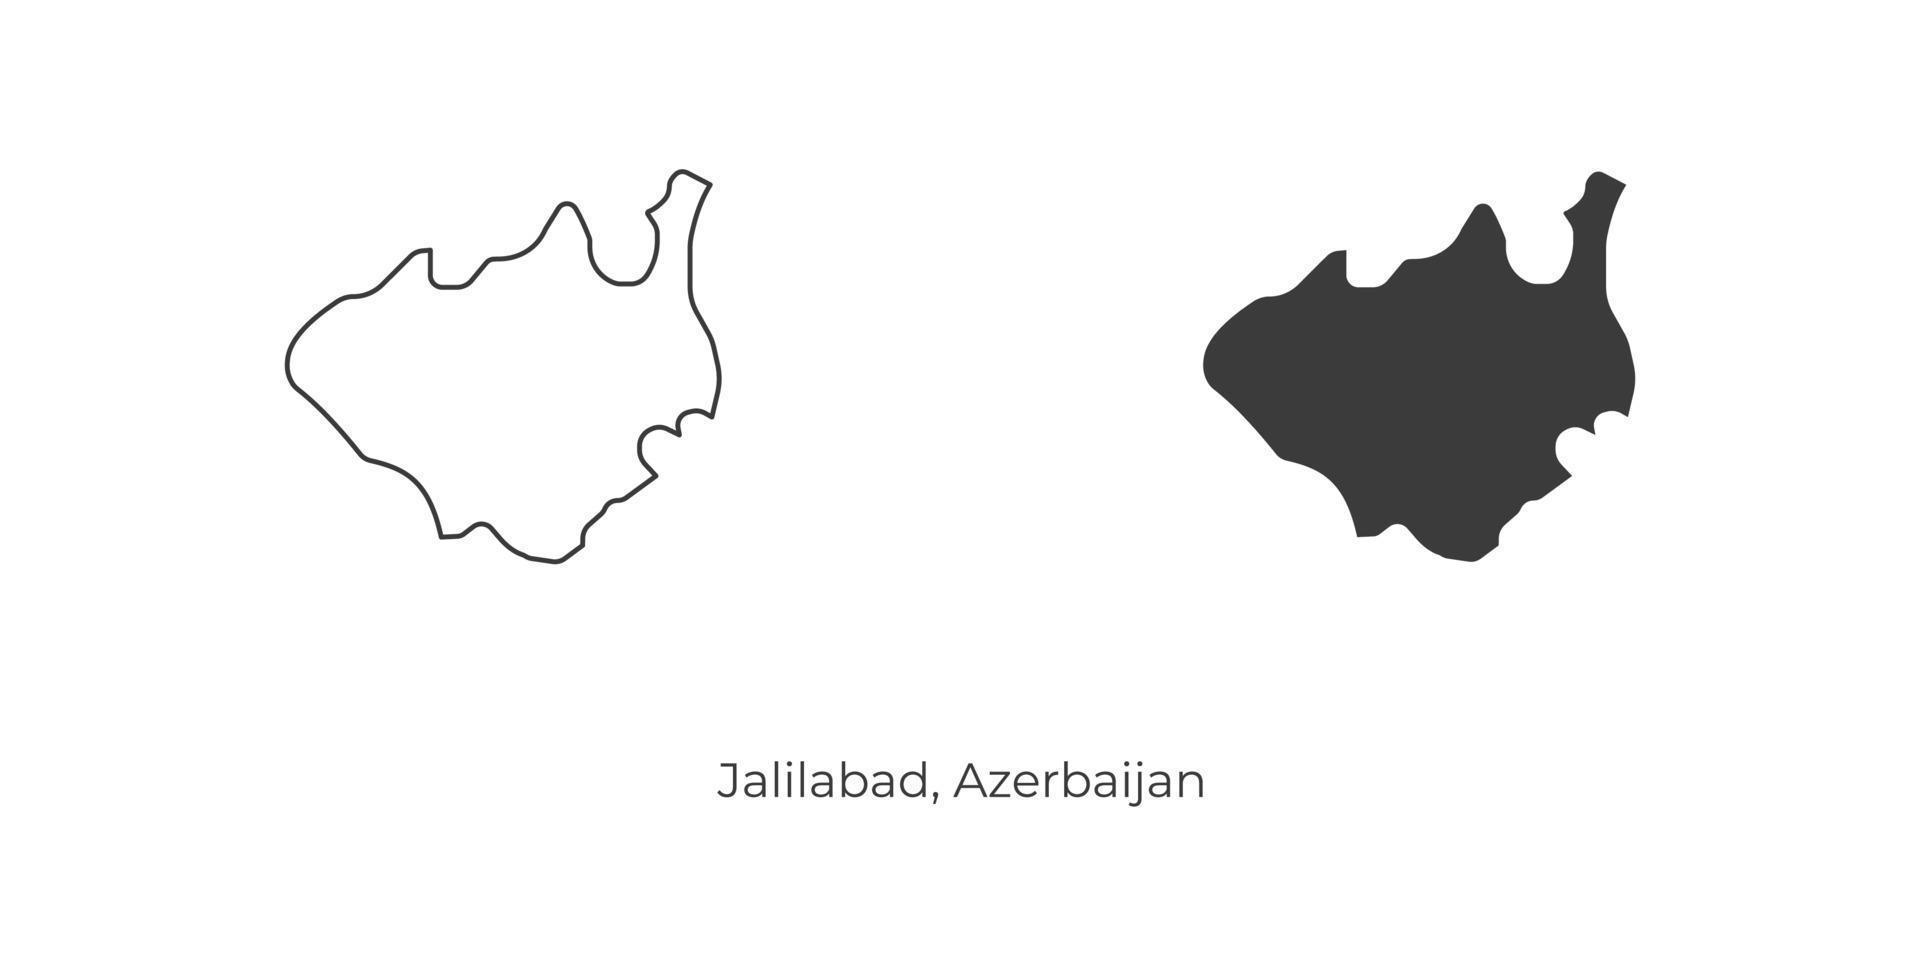 ilustração em vetor simples do mapa de jalilabad, azerbaijão.